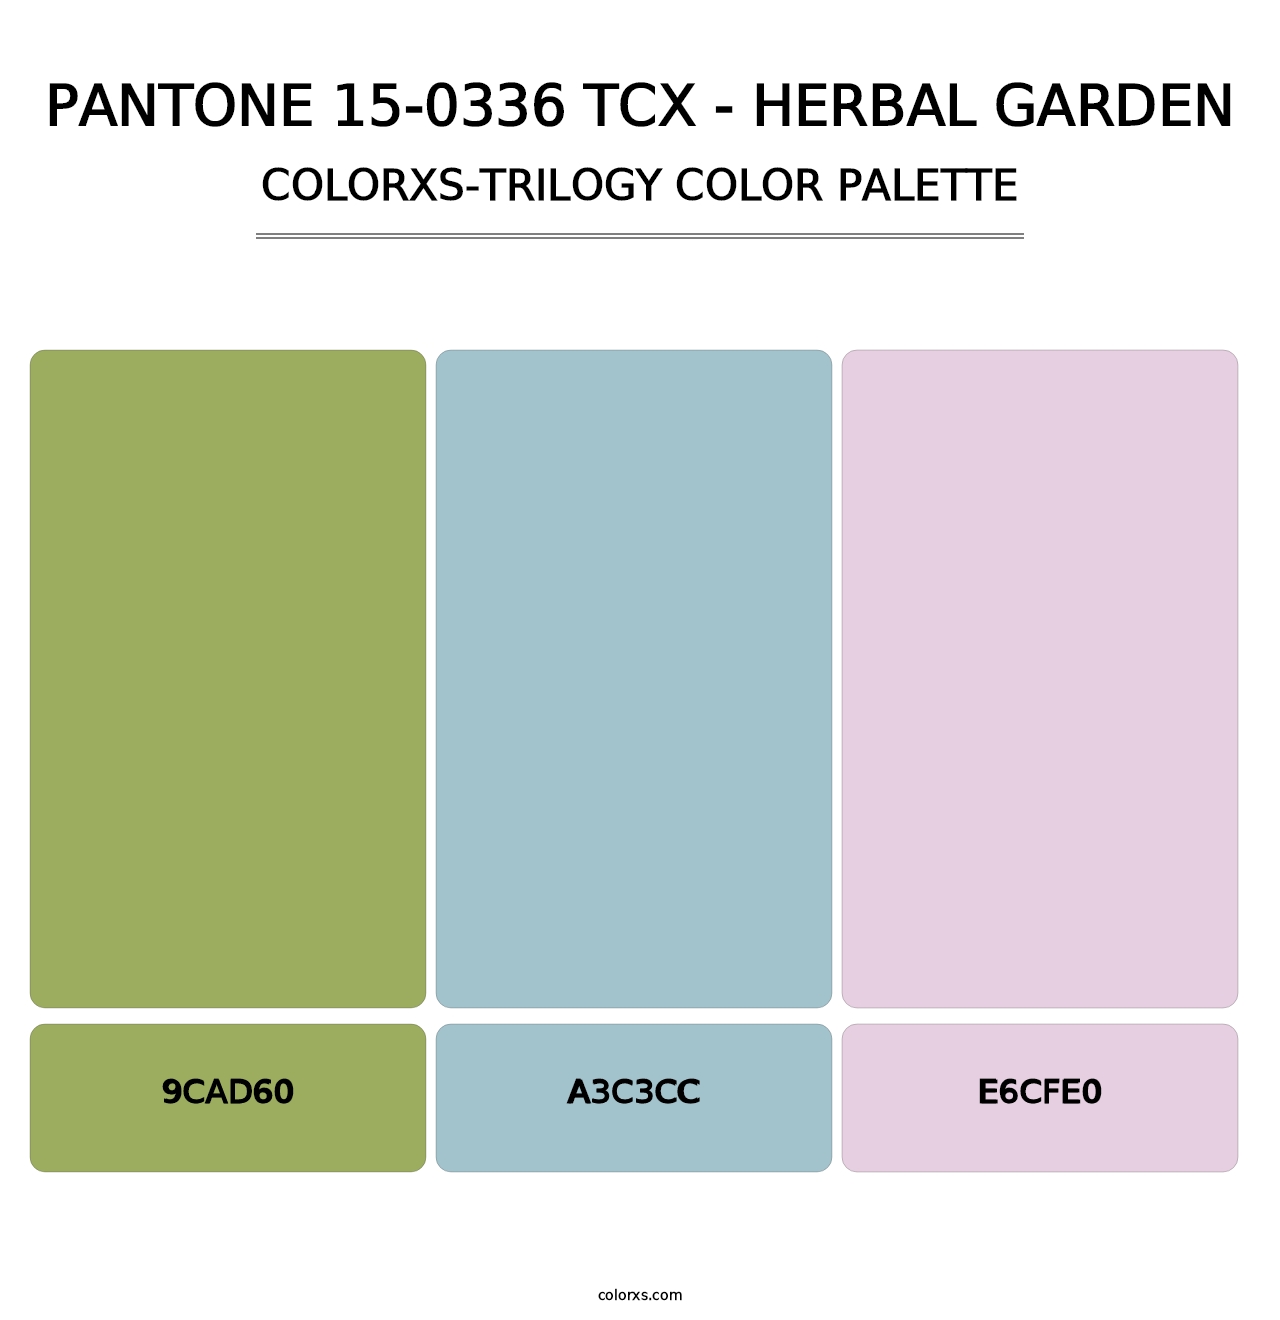 PANTONE 15-0336 TCX - Herbal Garden - Colorxs Trilogy Palette